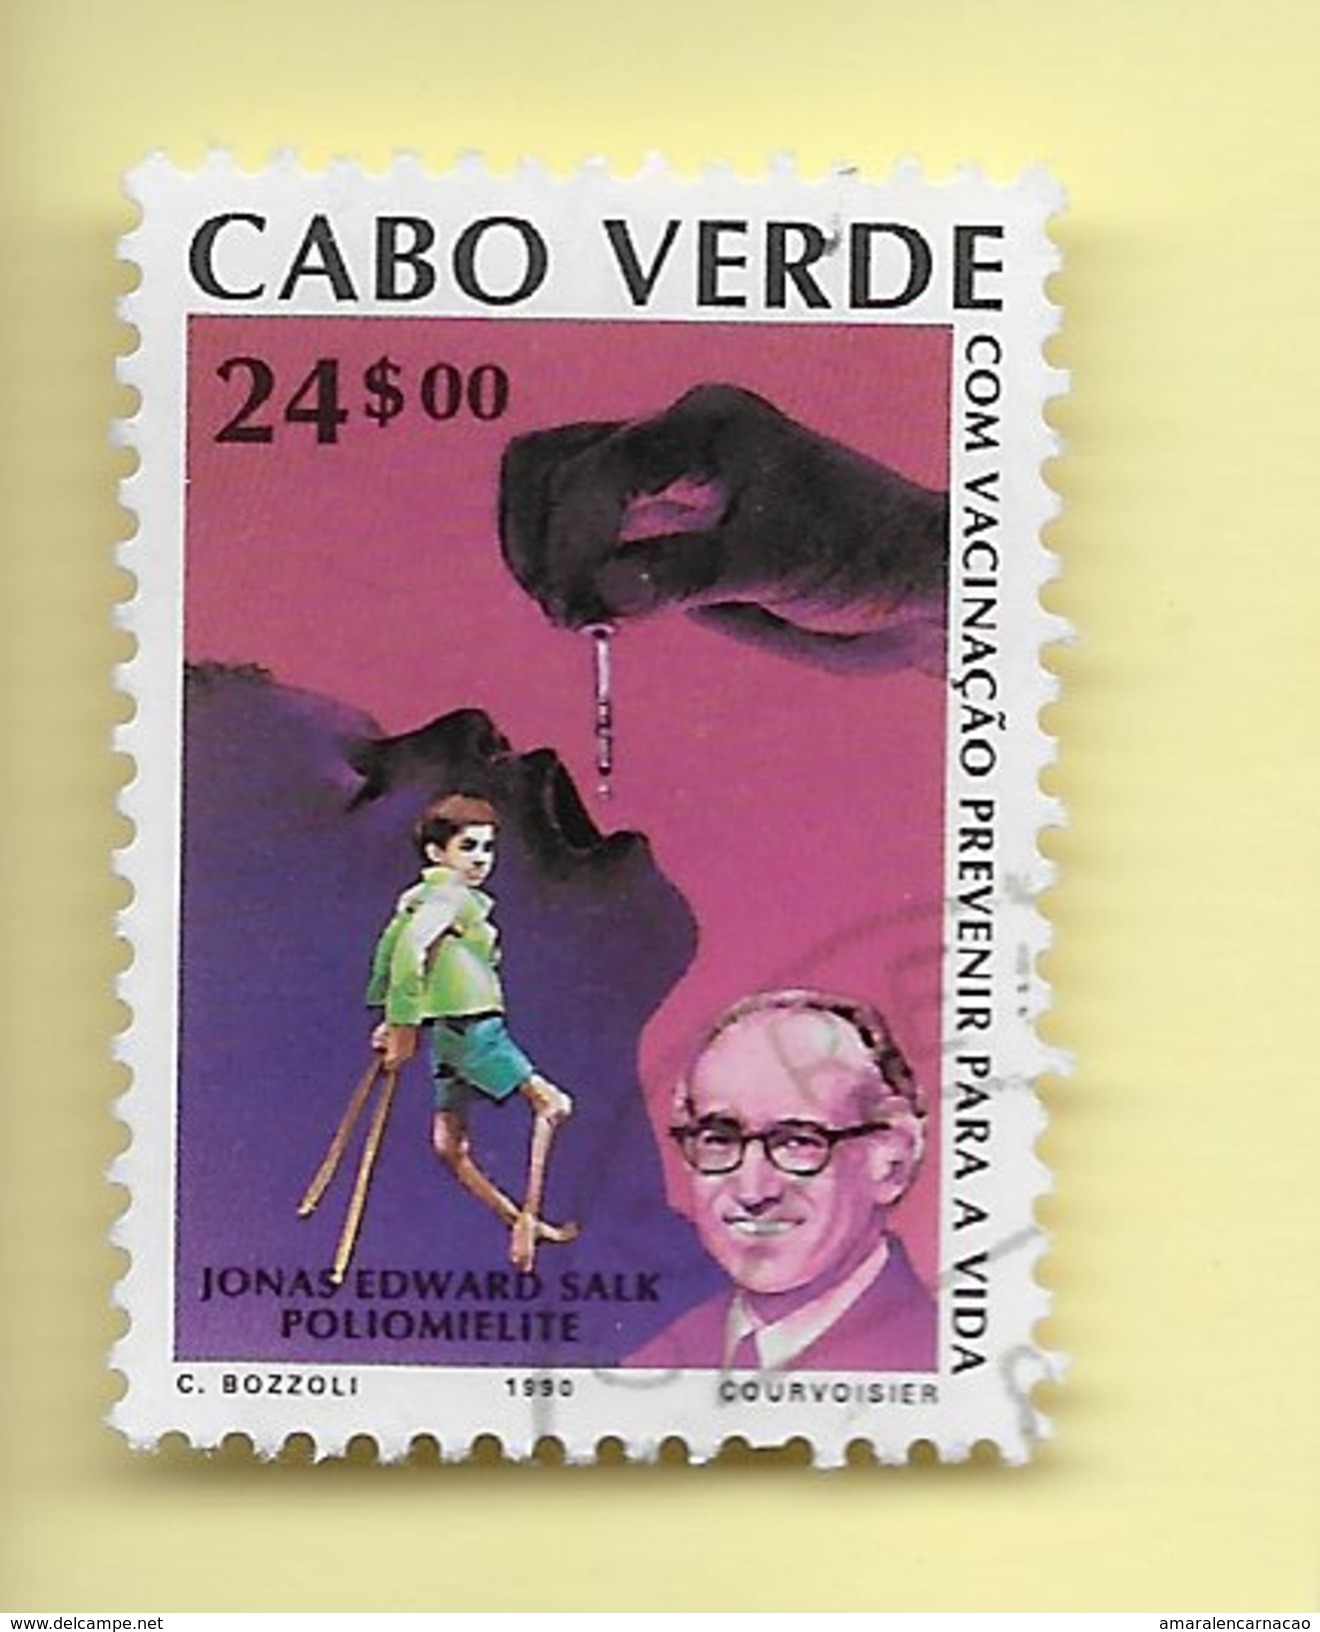 TIMBRES - STAMPS - CAP VERT / CAPE VERDE -1990- VACCINATION - EDWARD SALK (POLIO) - TIMBRE OBLITÉRÉ - CLÔTURE DE SERIE - Cape Verde